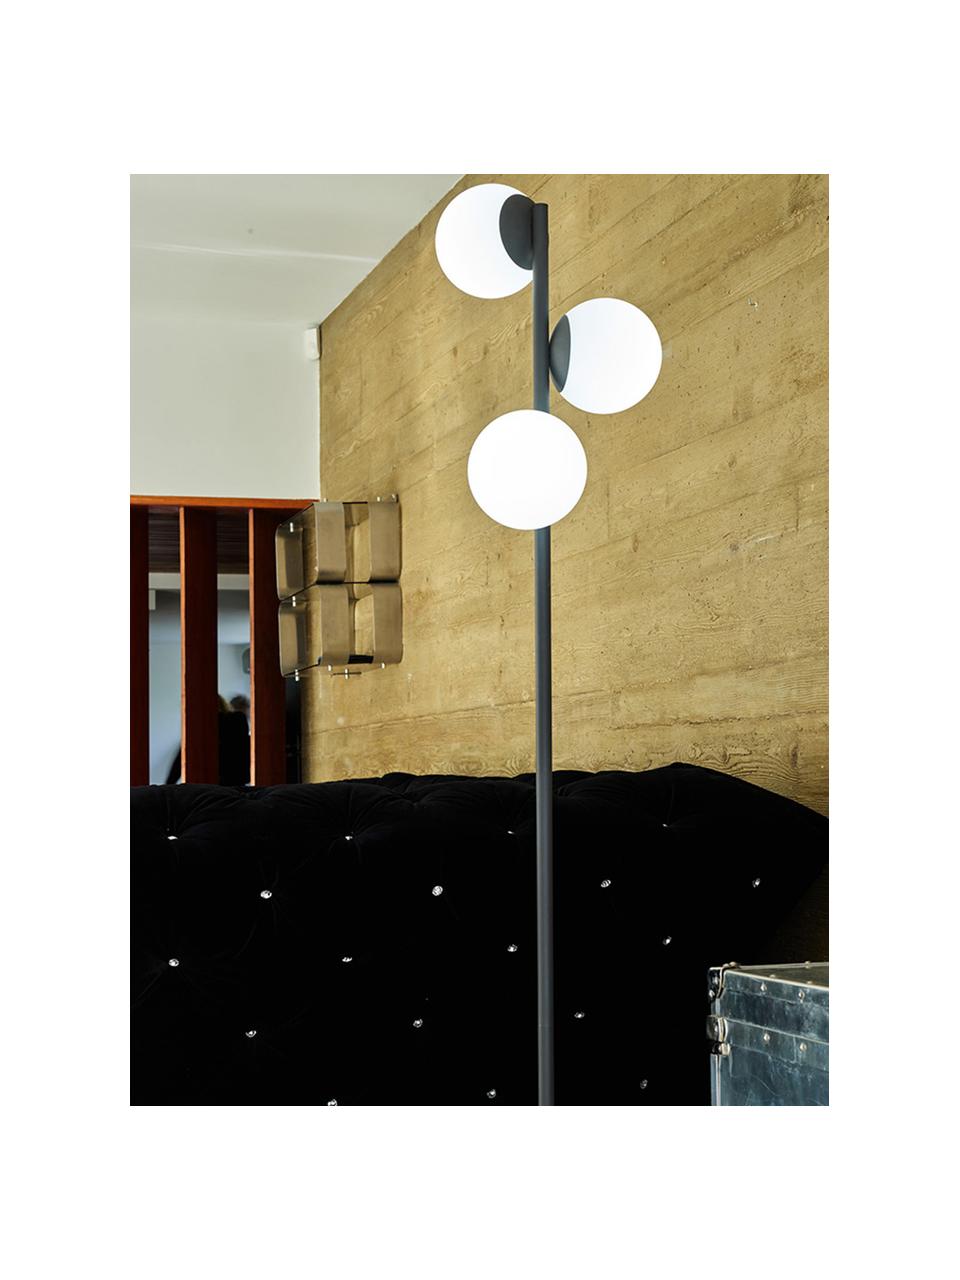 Lámpara de pie regulable para exterior Globy, con enchufe, Cable: plástico, Negro, blanco, Ø 42 x Al 175 cm